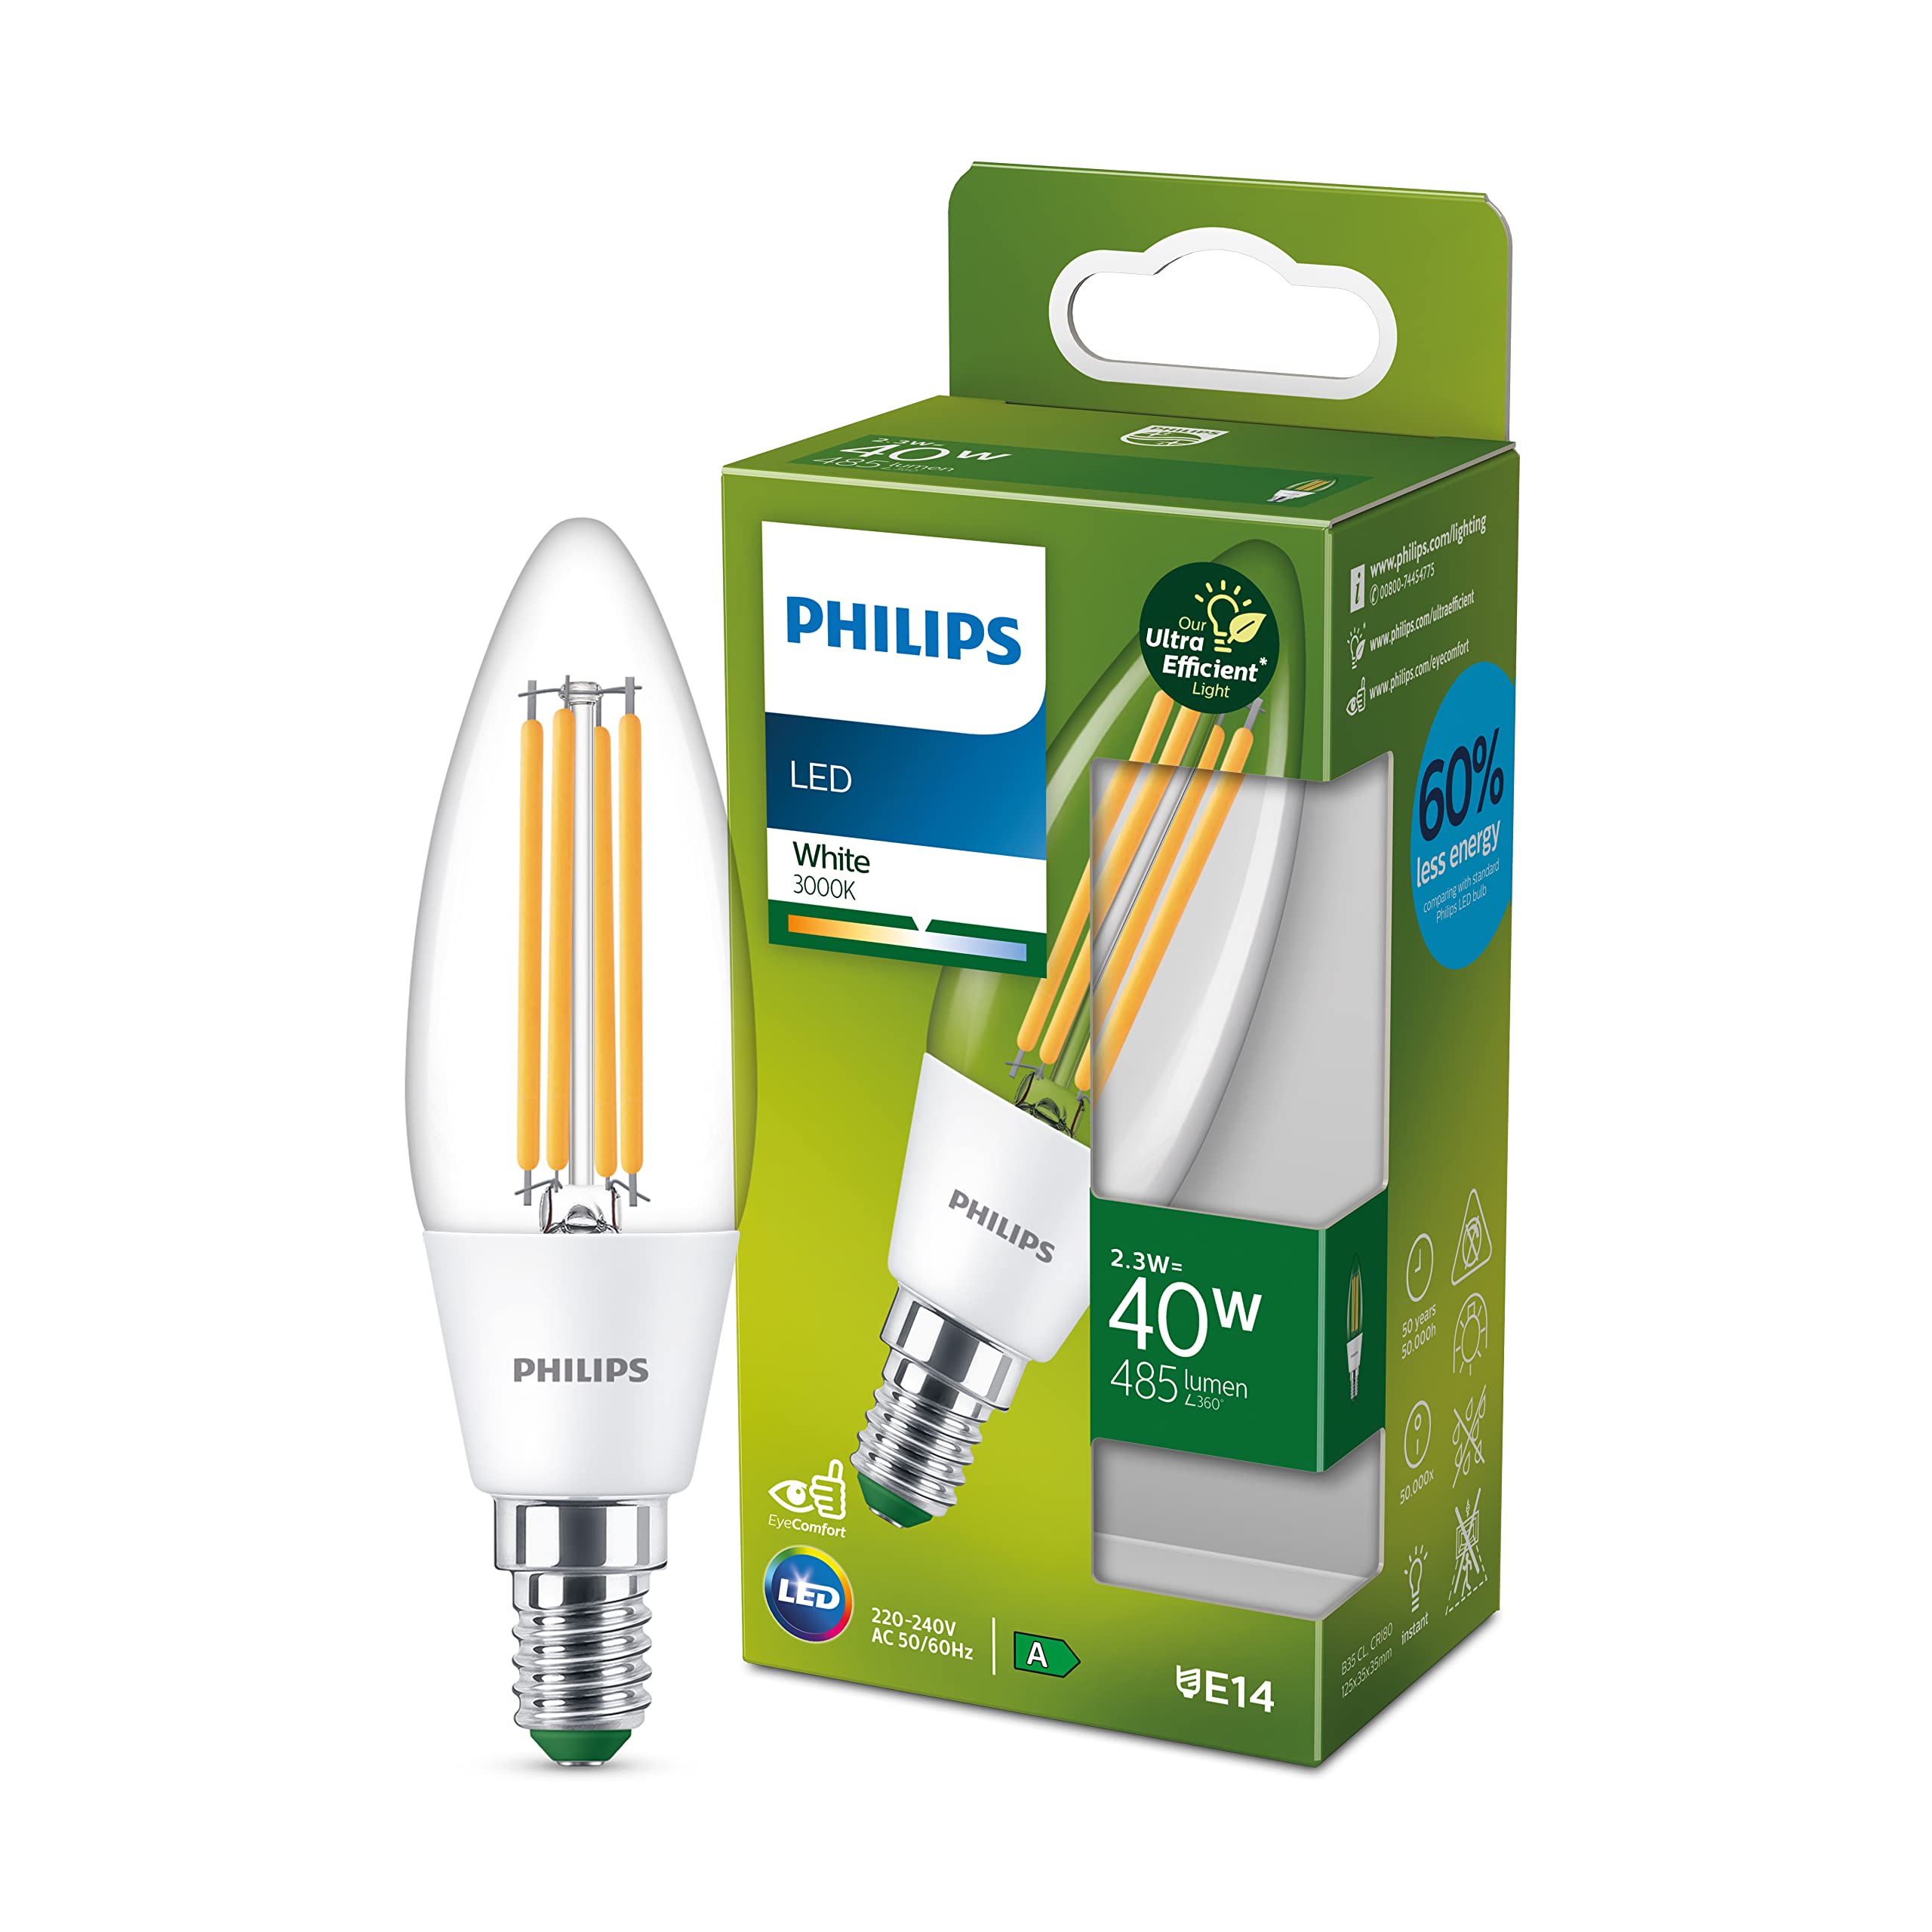 prix de gros Philips ampoule LED Flamme classe A, 40W, 3000K Blanc, transparente, verre    [Classe énergétique A] 50lKqKRoL boutique en ligne